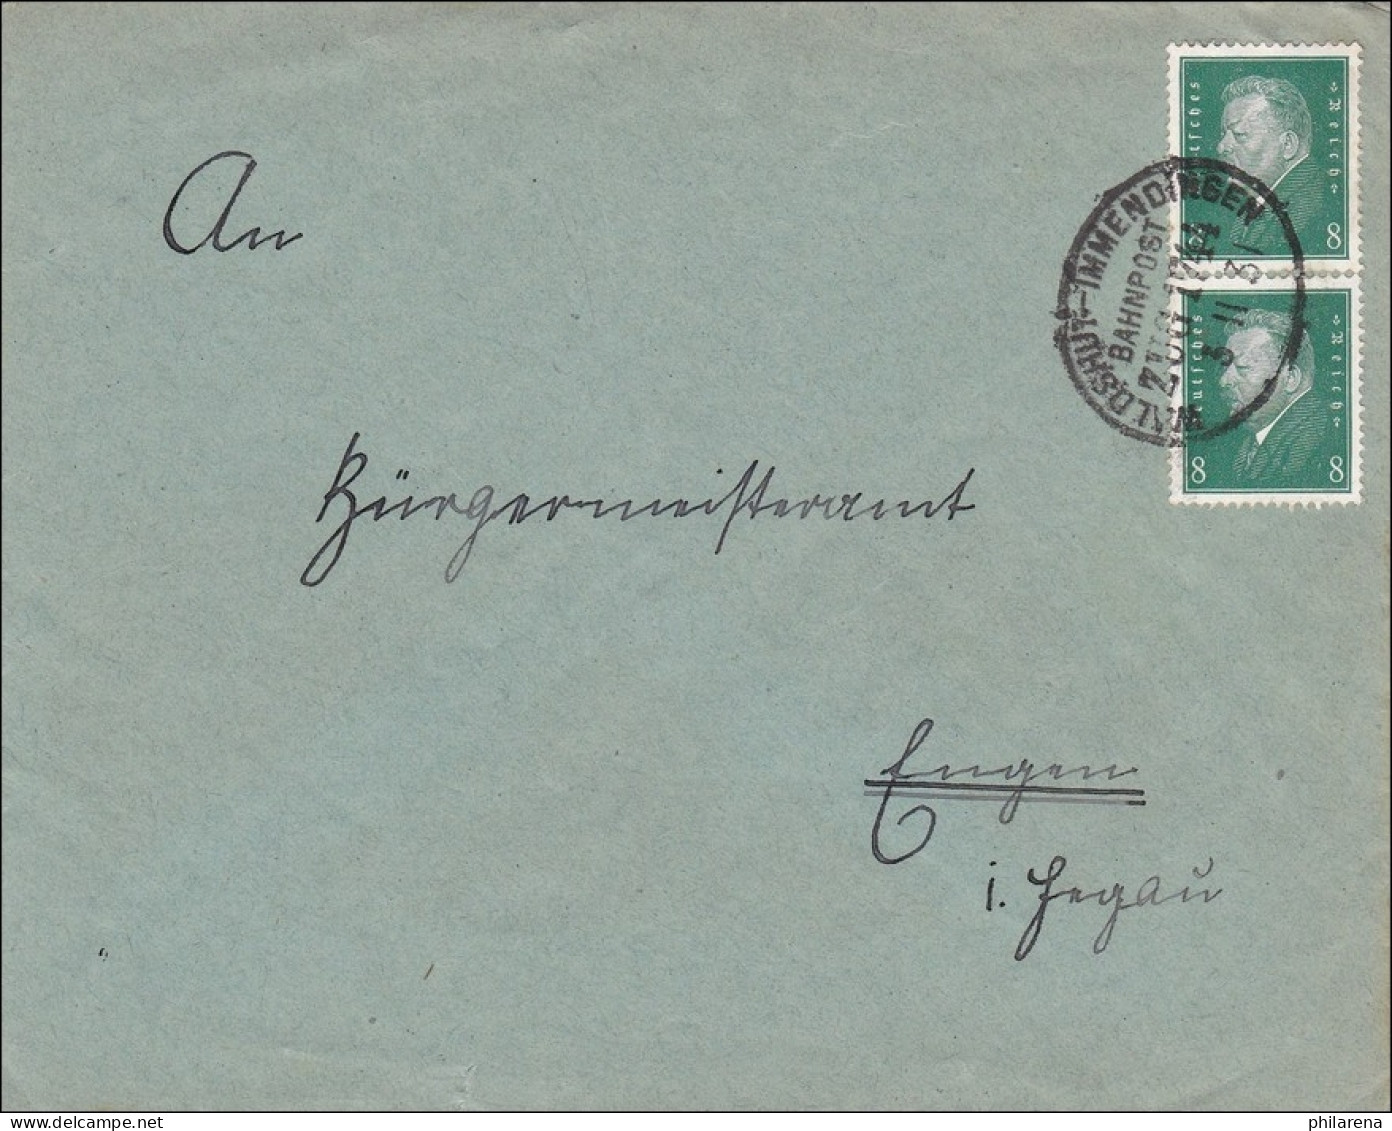 Bahnpost: Brief Mit Zugstempel Waldshut-Immendingen 1931 - Covers & Documents